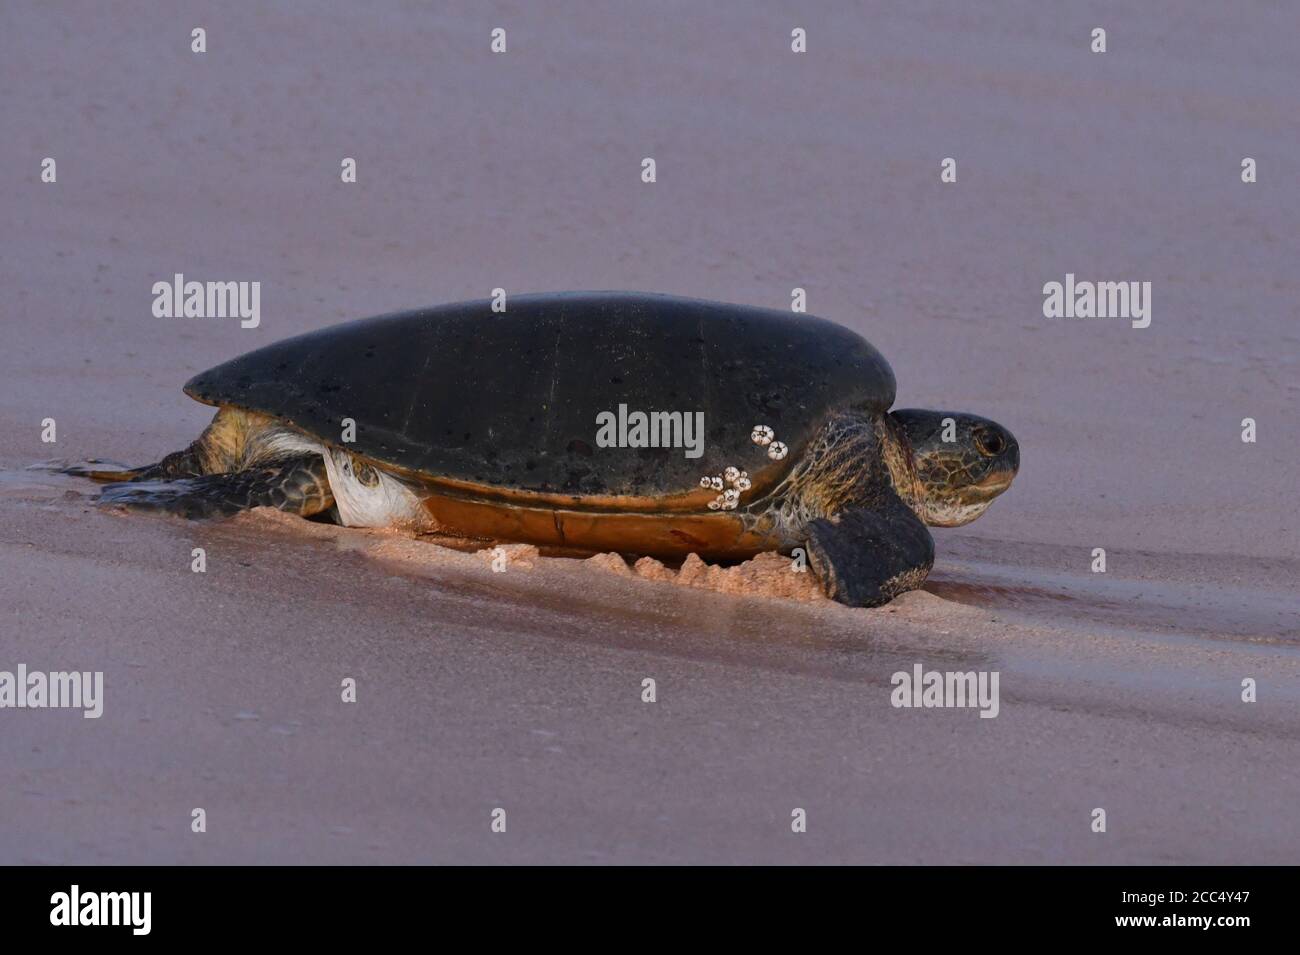 Tortue verte, tortue rocheuse, tortue de viande (Chelonia mydas), femelle sur la plage, en rendonnant à la mer après avoir pondu des œufs dans le sable, île de l'Ascension Banque D'Images